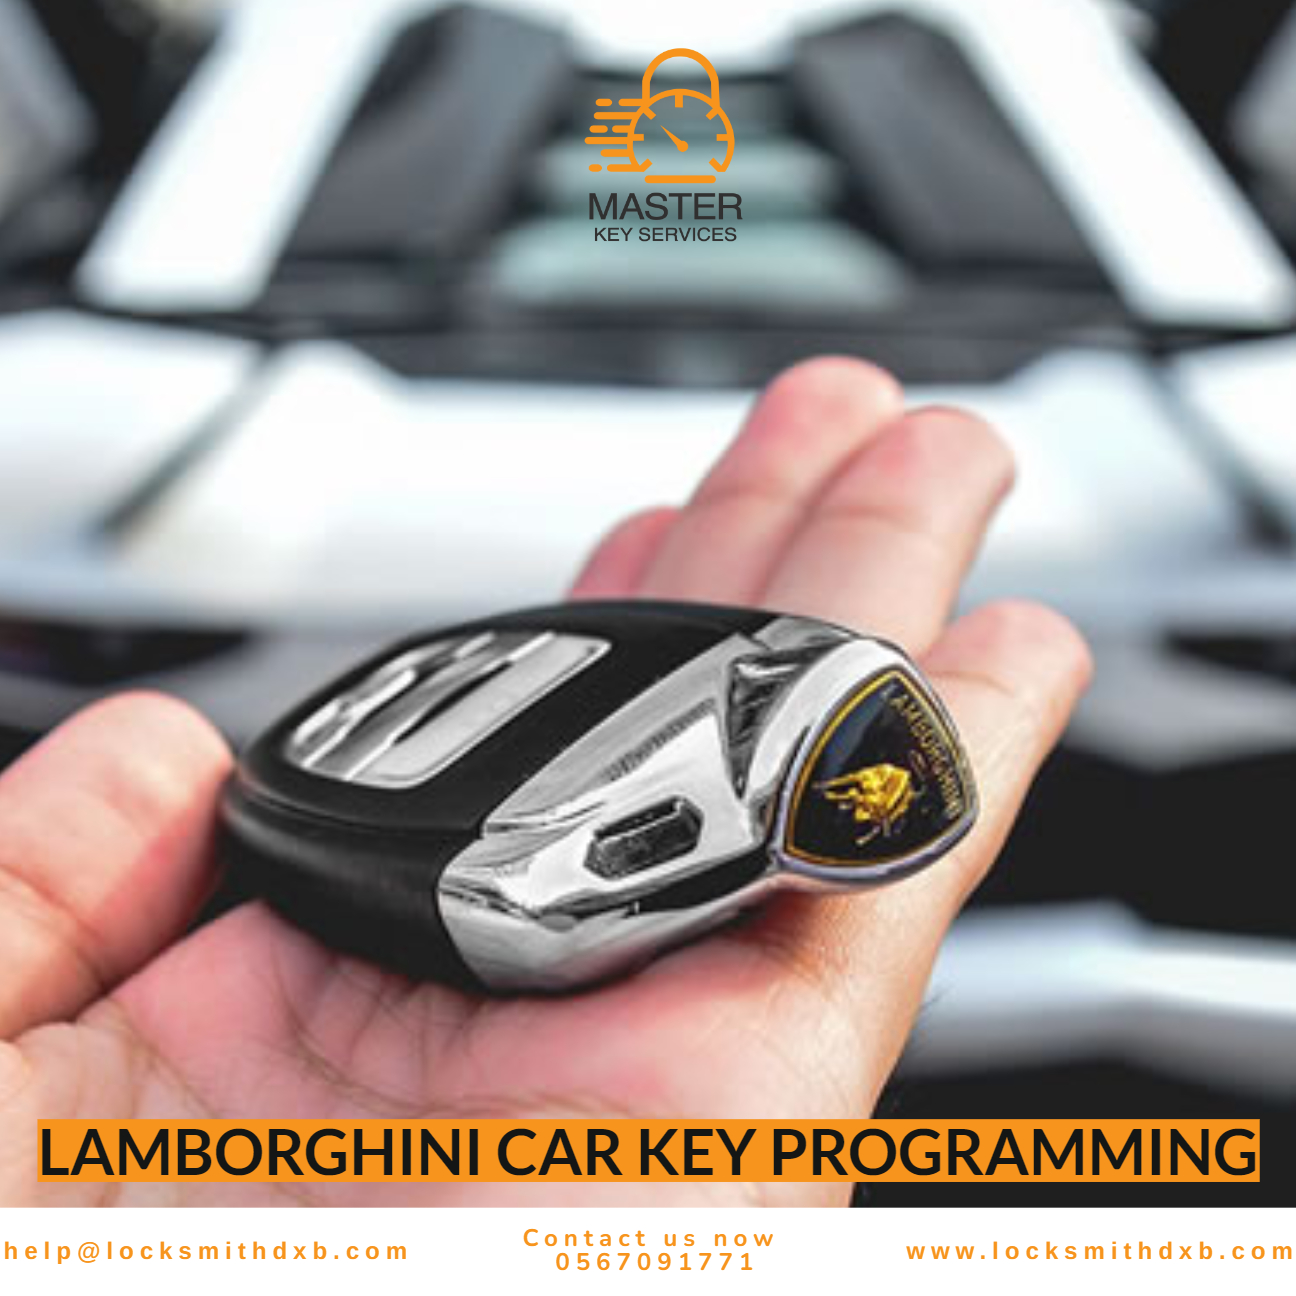 LAMBORGHINI car key programming